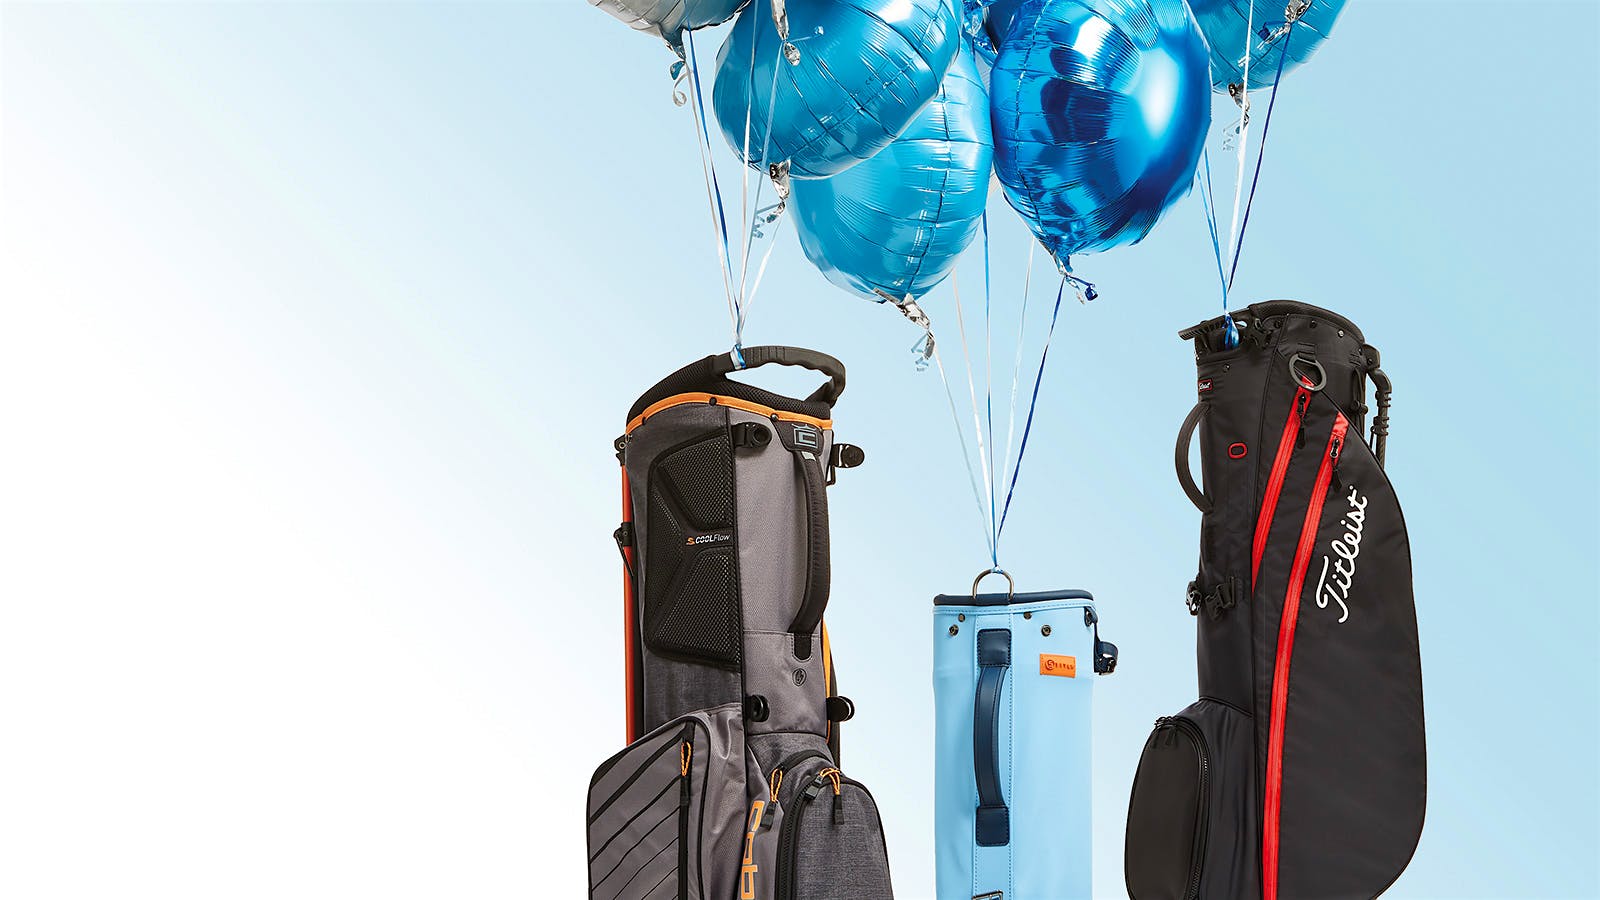 TaylorMade FlexTech Lite Stand Golf Bags